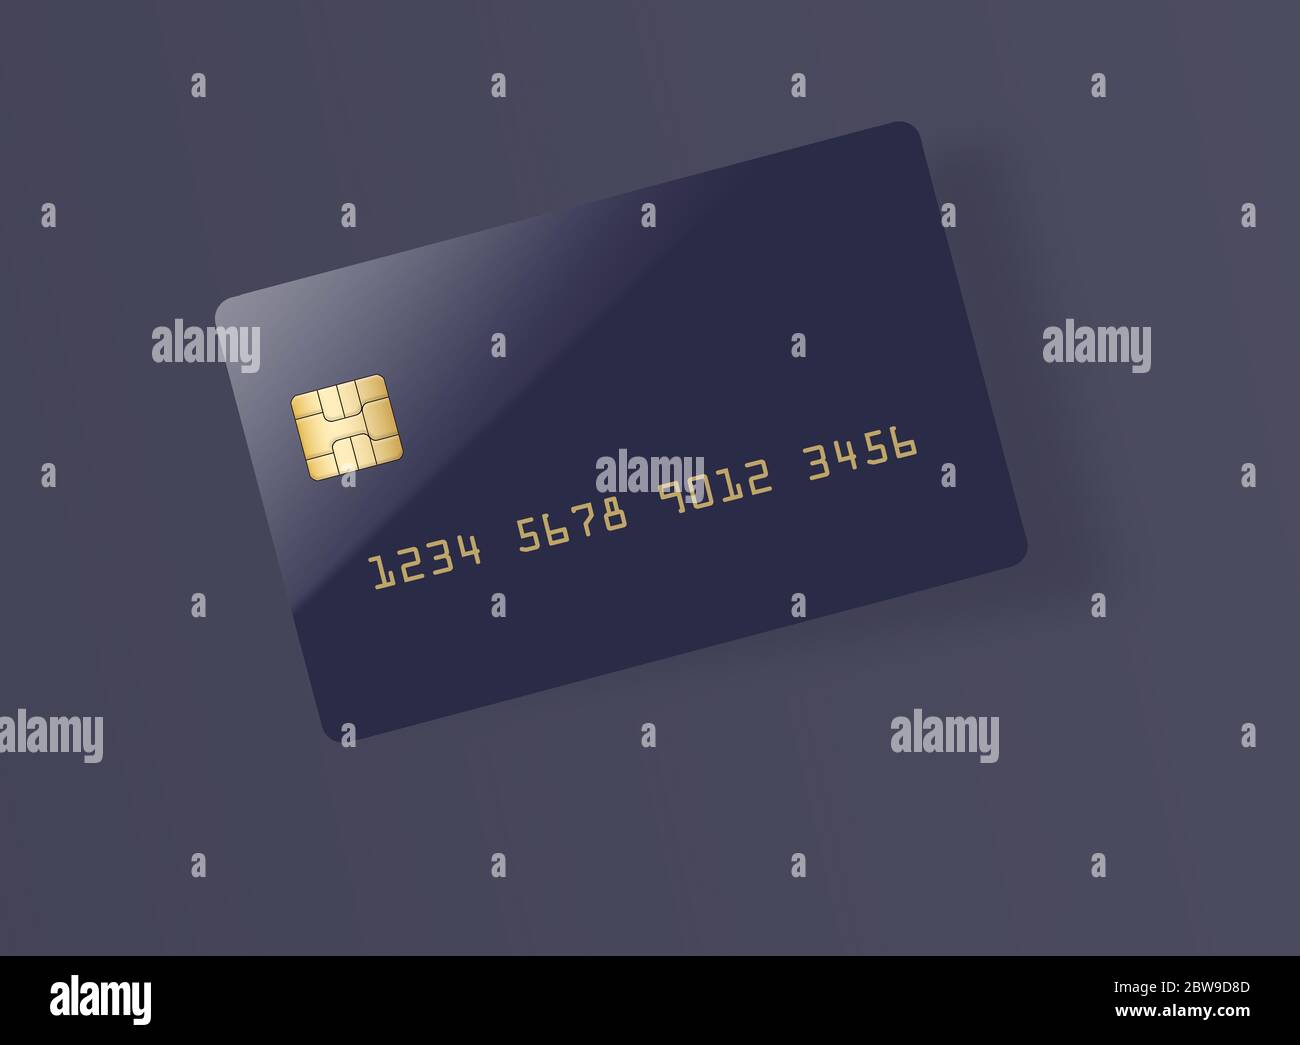 Aquí está una tarjeta de crédito o débito azul en blanco con un chip EMV dorado. Área de texto. Copiar área. La tarjeta proyecta una sombra sobre un fondo gris claro. Foto de stock